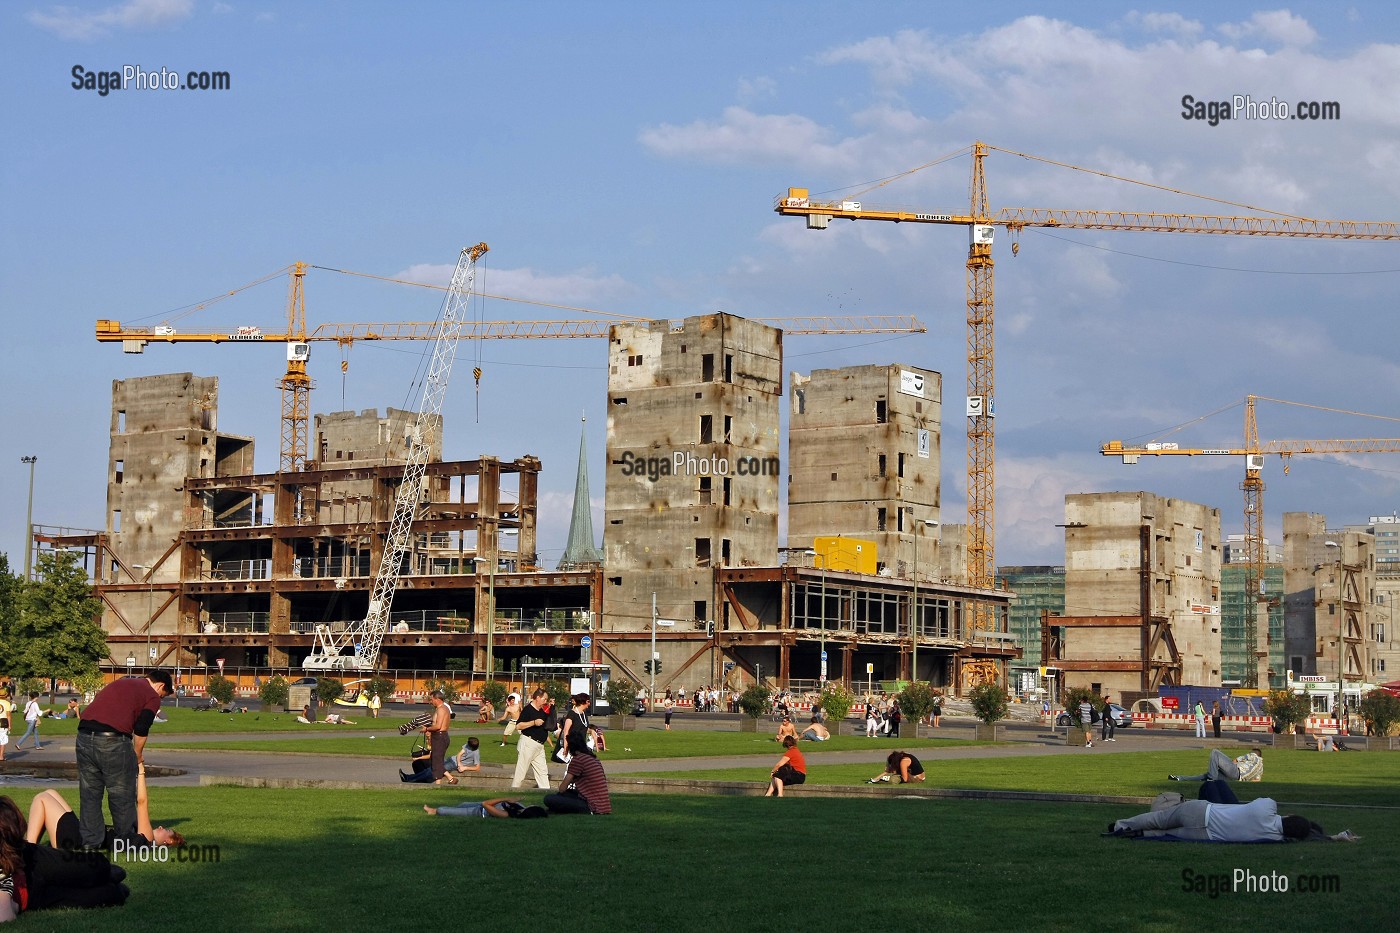 LUSTGARTEN ET CONSTRUCTION D'UN FUTUR PALAIS., BERLIN, ALLEMAGNE 